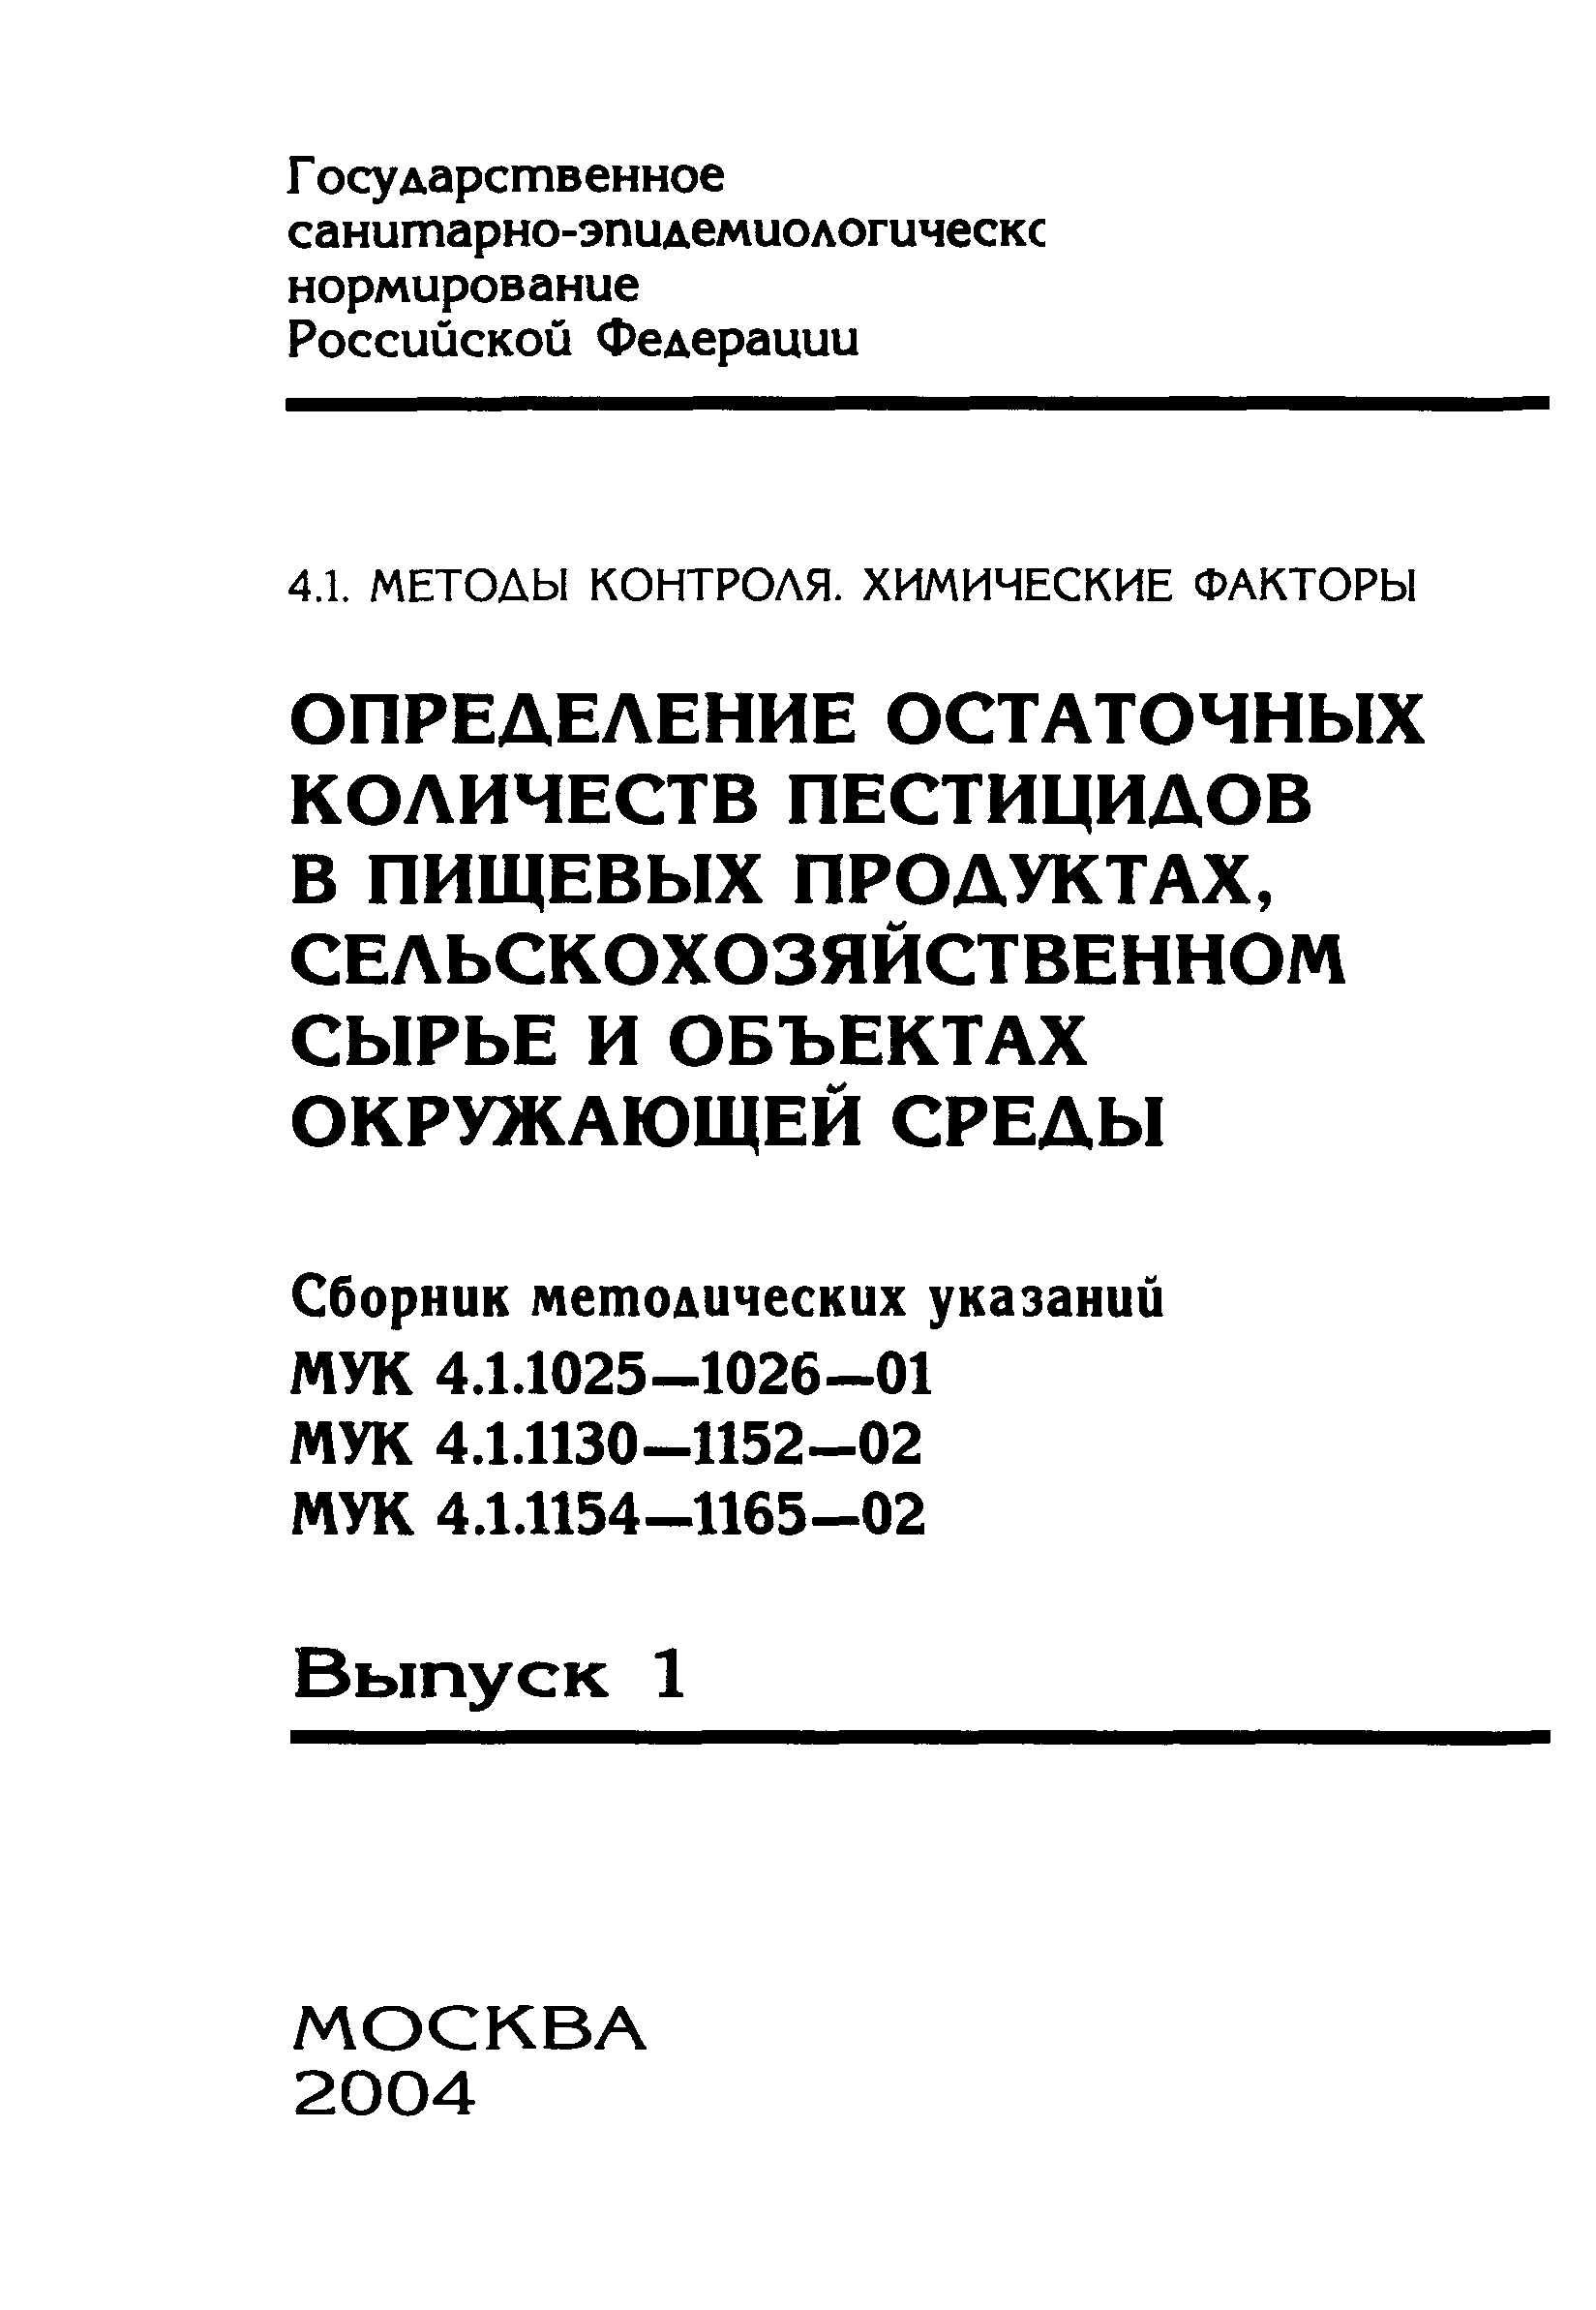 МУК 4.1.1131-02